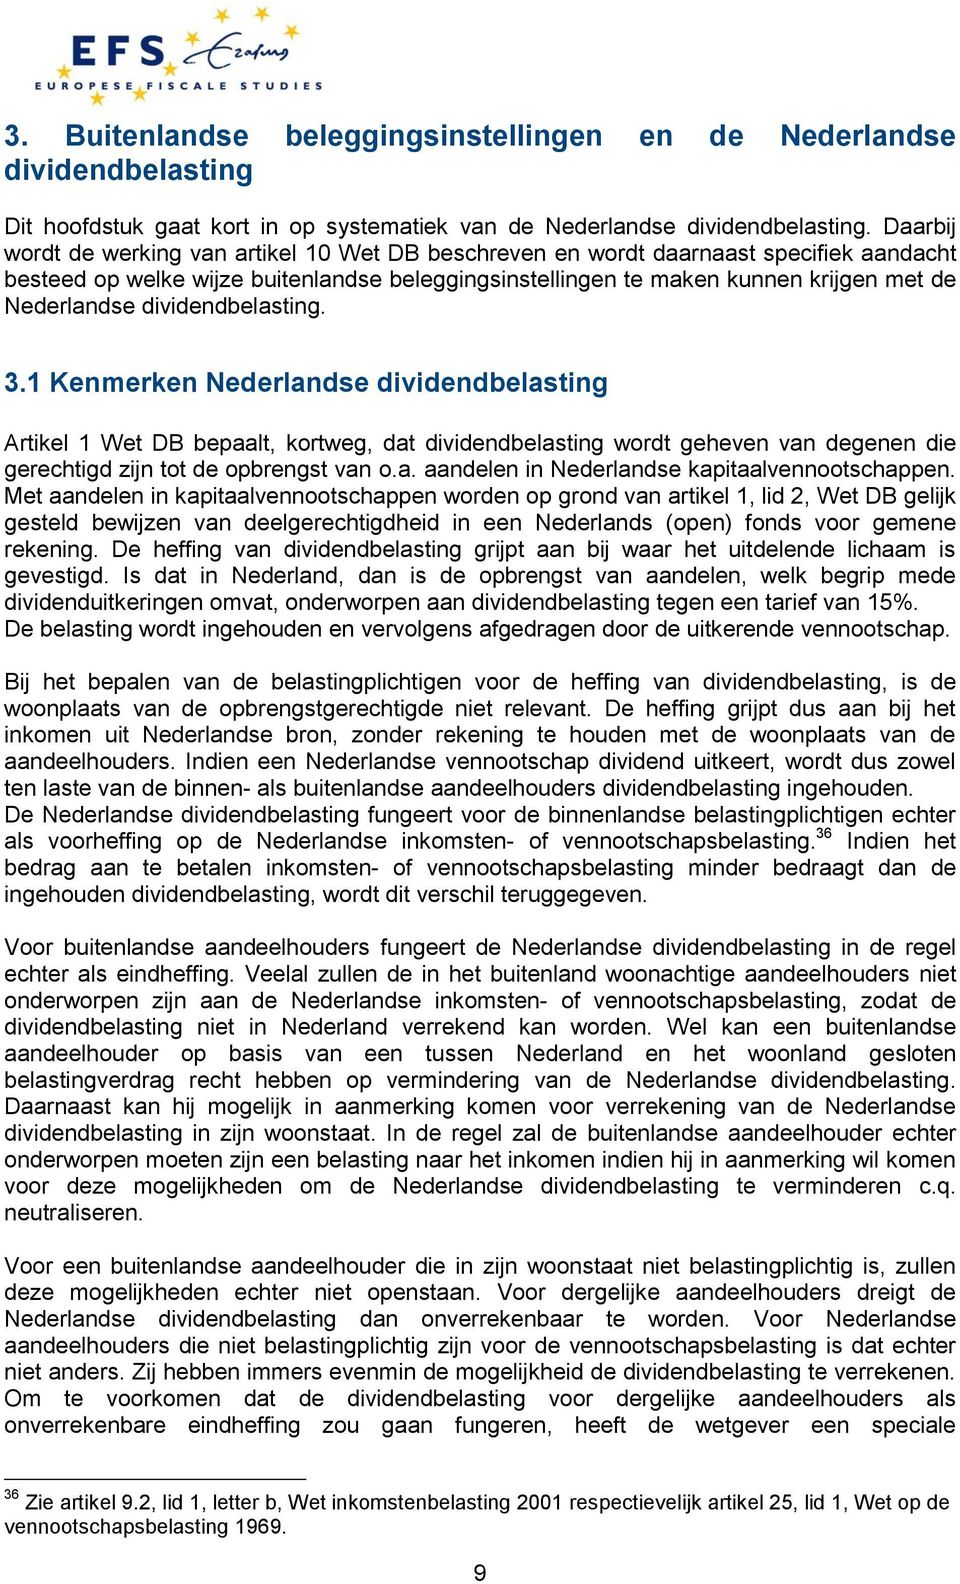 dividendbelasting. 3.1 Kenmerken Nederlandse dividendbelasting Artikel 1 Wet DB bepaalt, kortweg, dat dividendbelasting wordt geheven van degenen die gerechtigd zijn tot de opbrengst van o.a. aandelen in Nederlandse kapitaalvennootschappen.